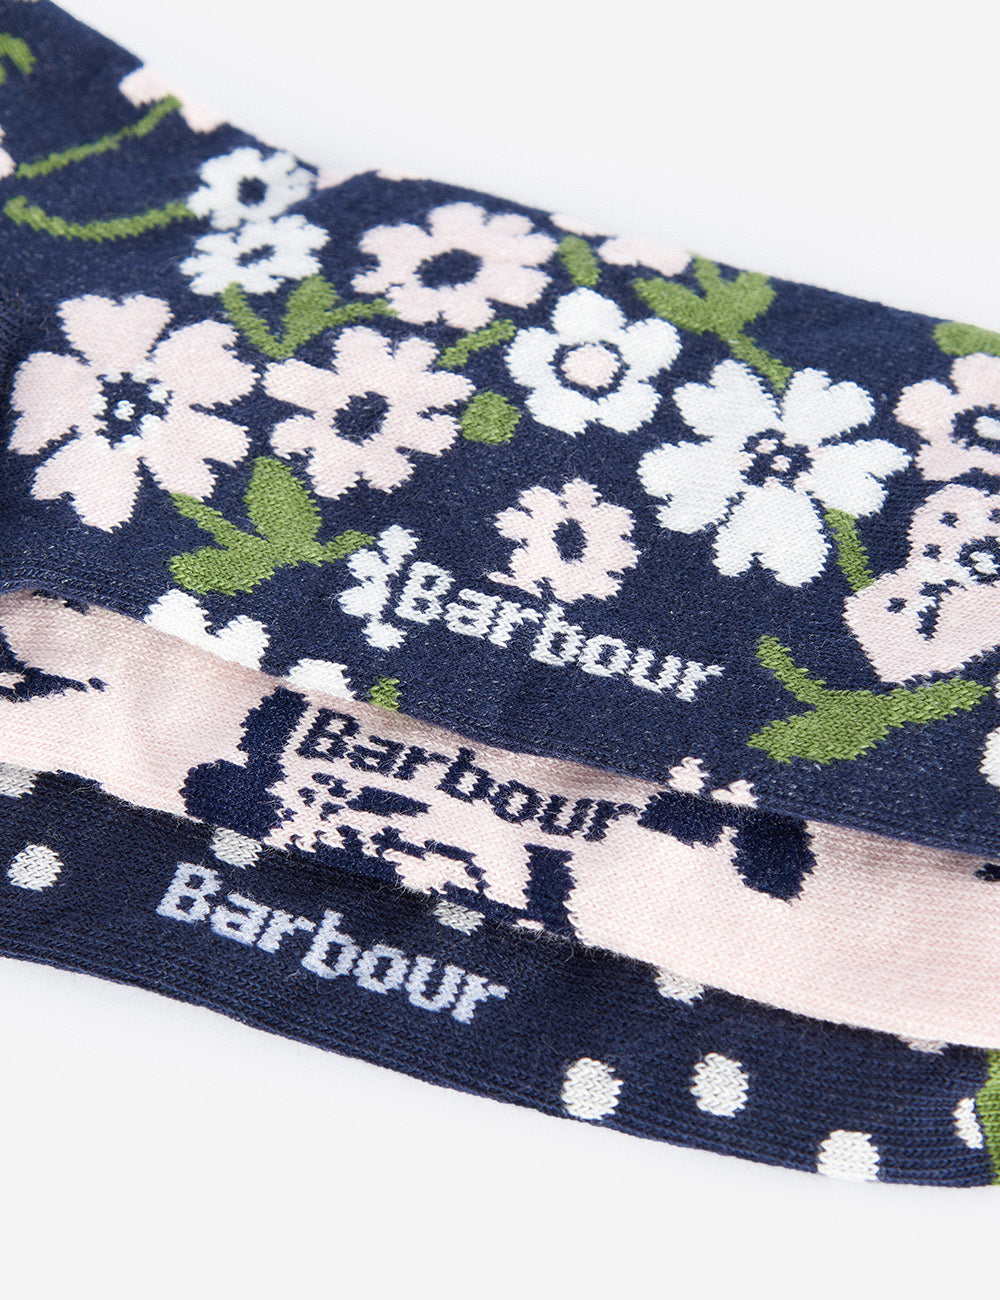 Barbour Floral Print Sock Gift Set - Navy/Pink